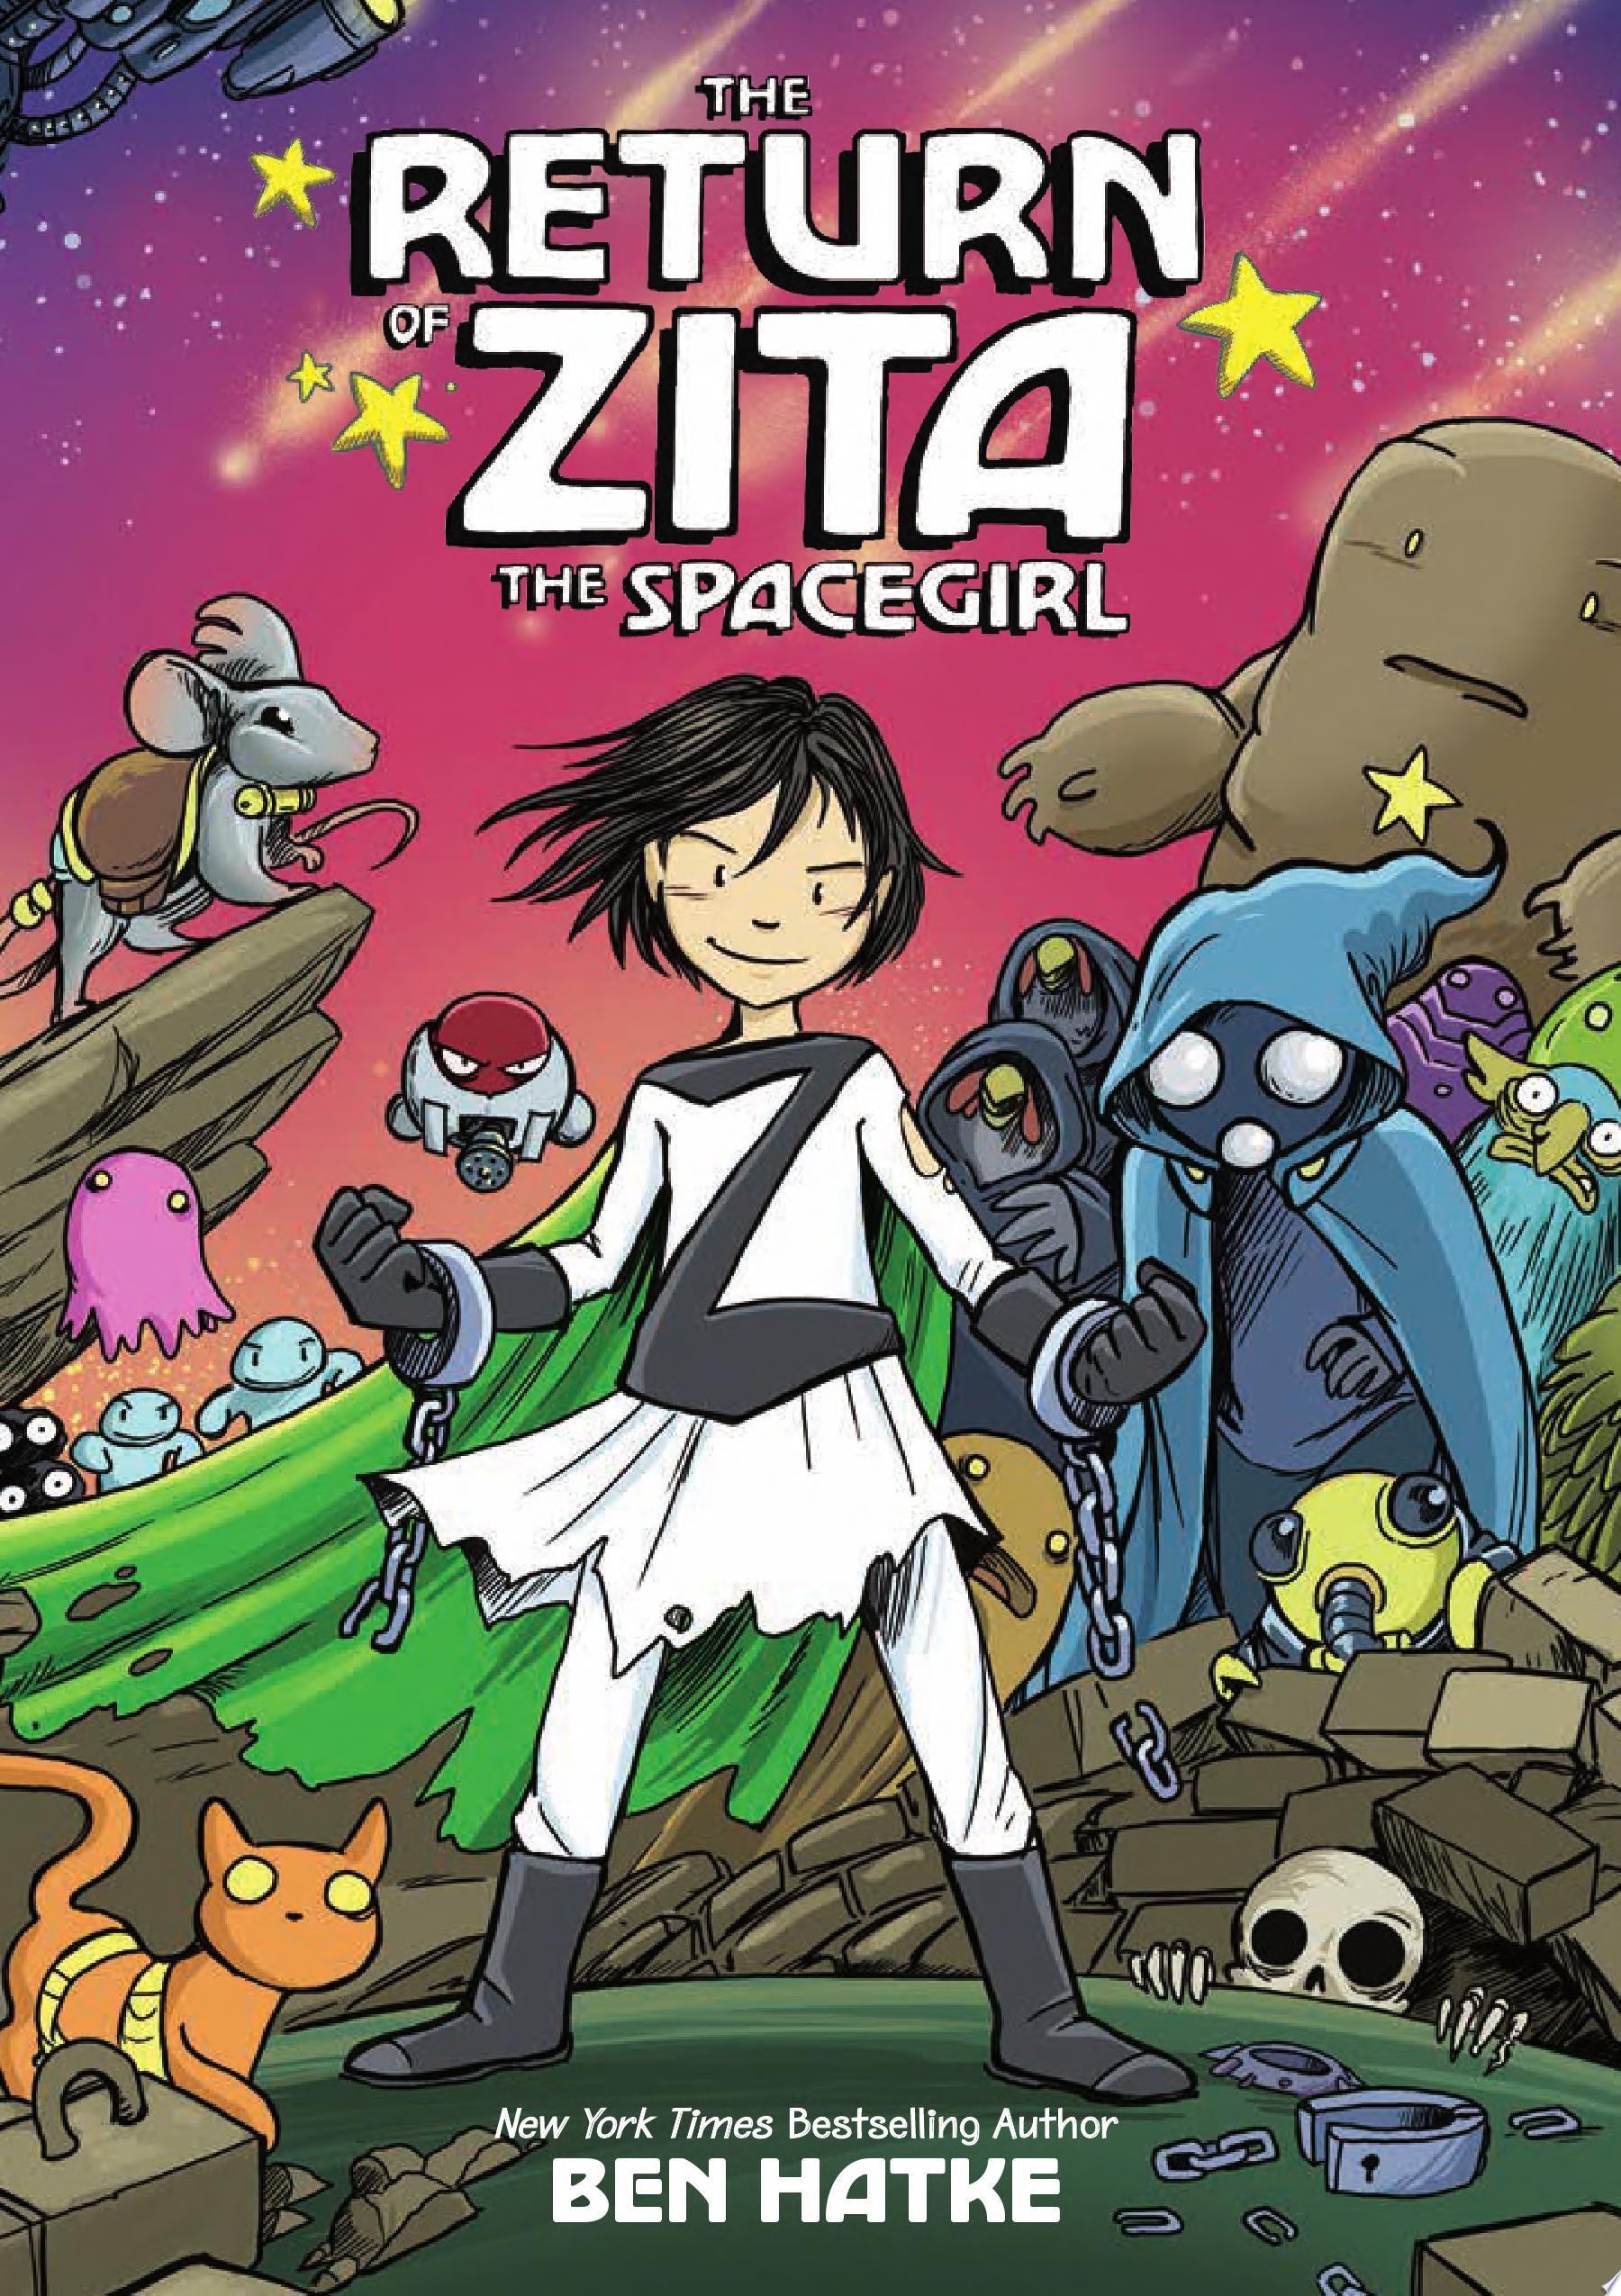 Image for "The Return of Zita the Spacegirl"